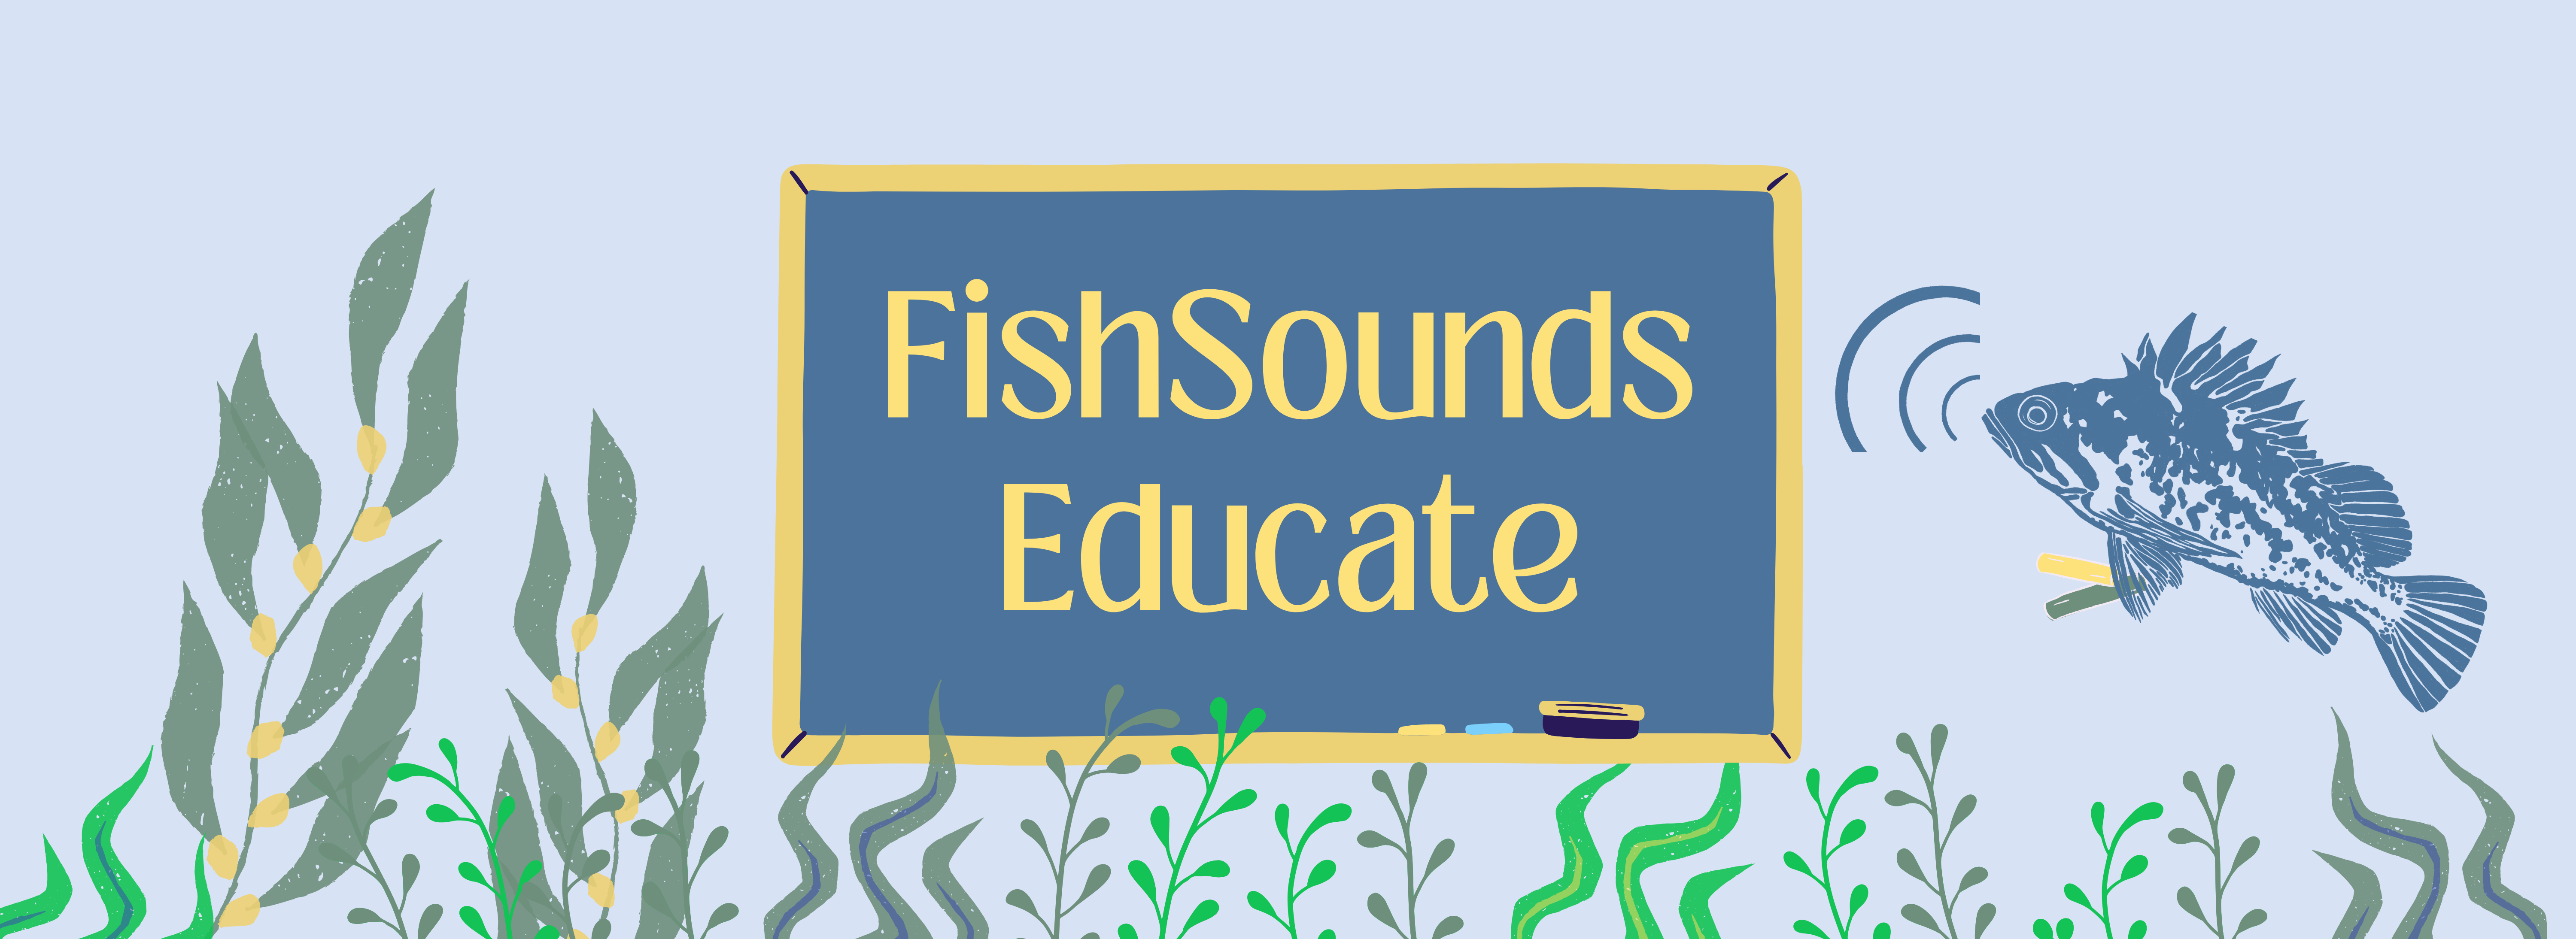 FishSounds Educate